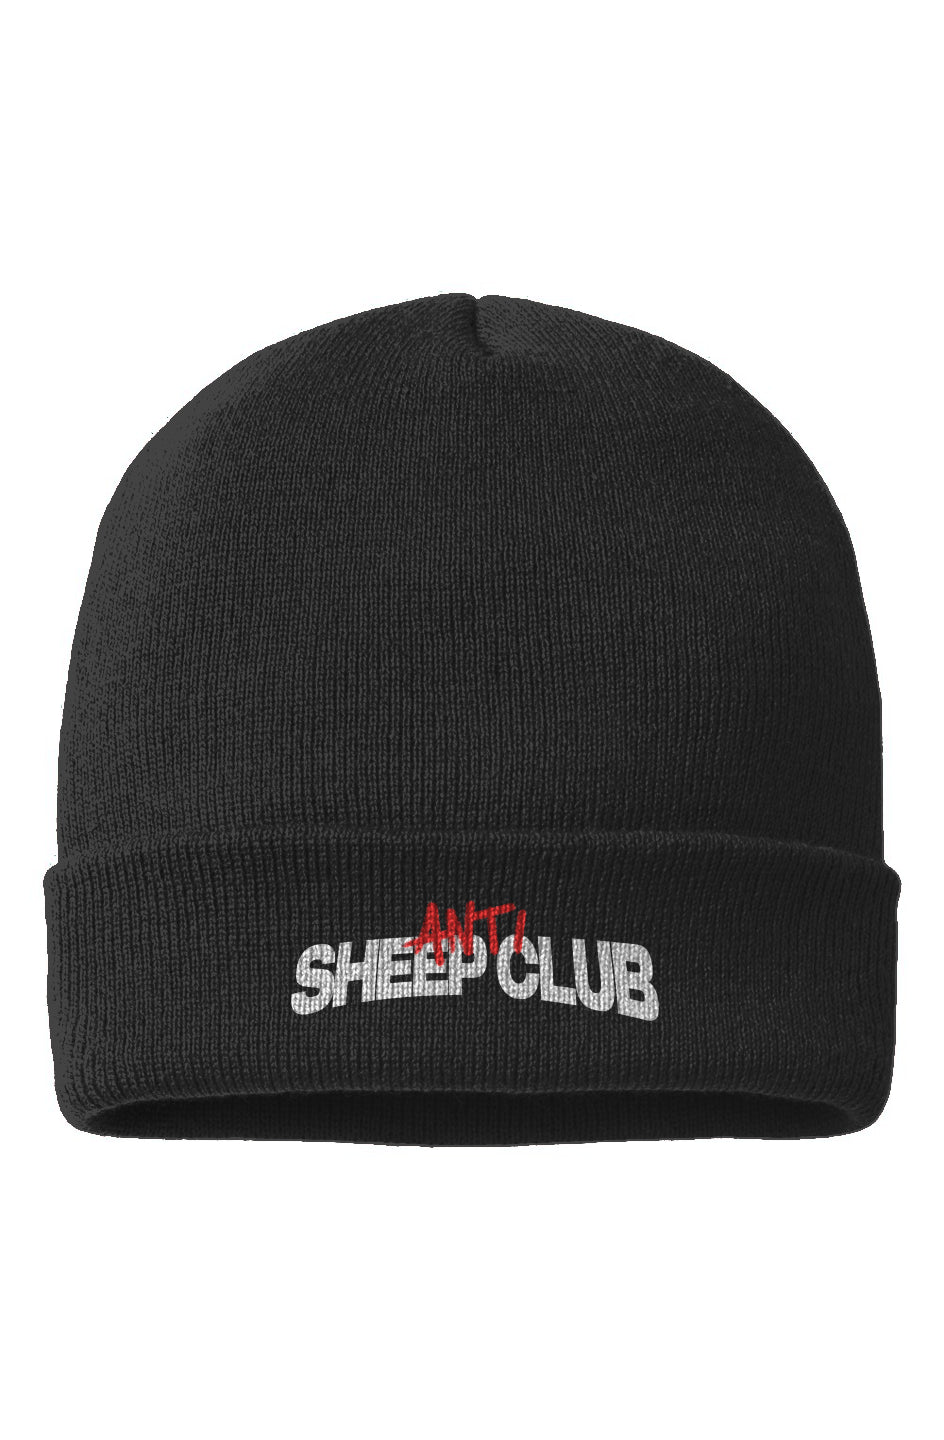 Anti Sheep Club Beanie